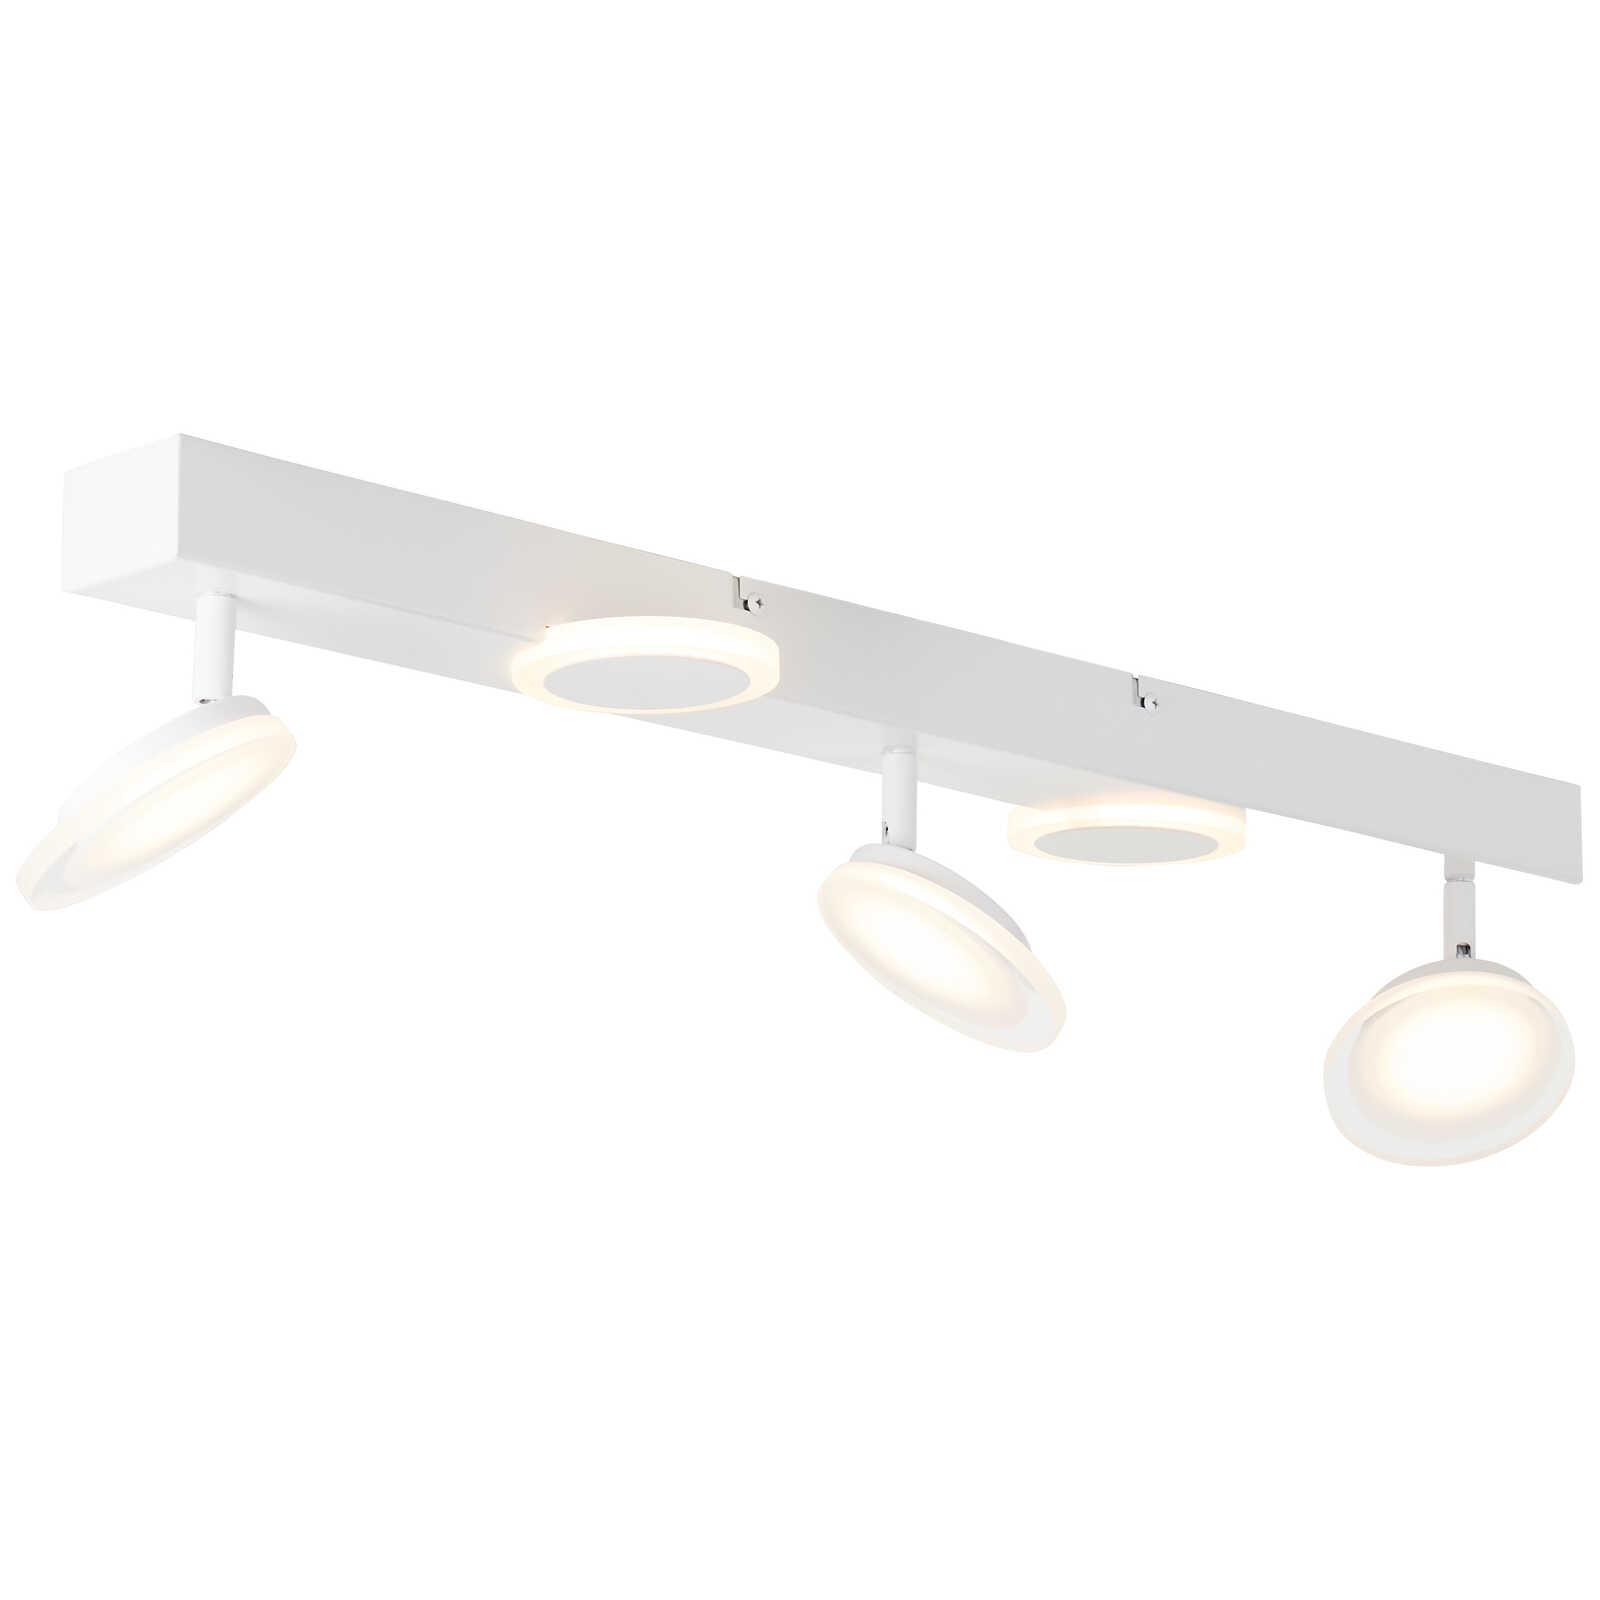             Plastic spotlight bar - Lilly 3 - White
        